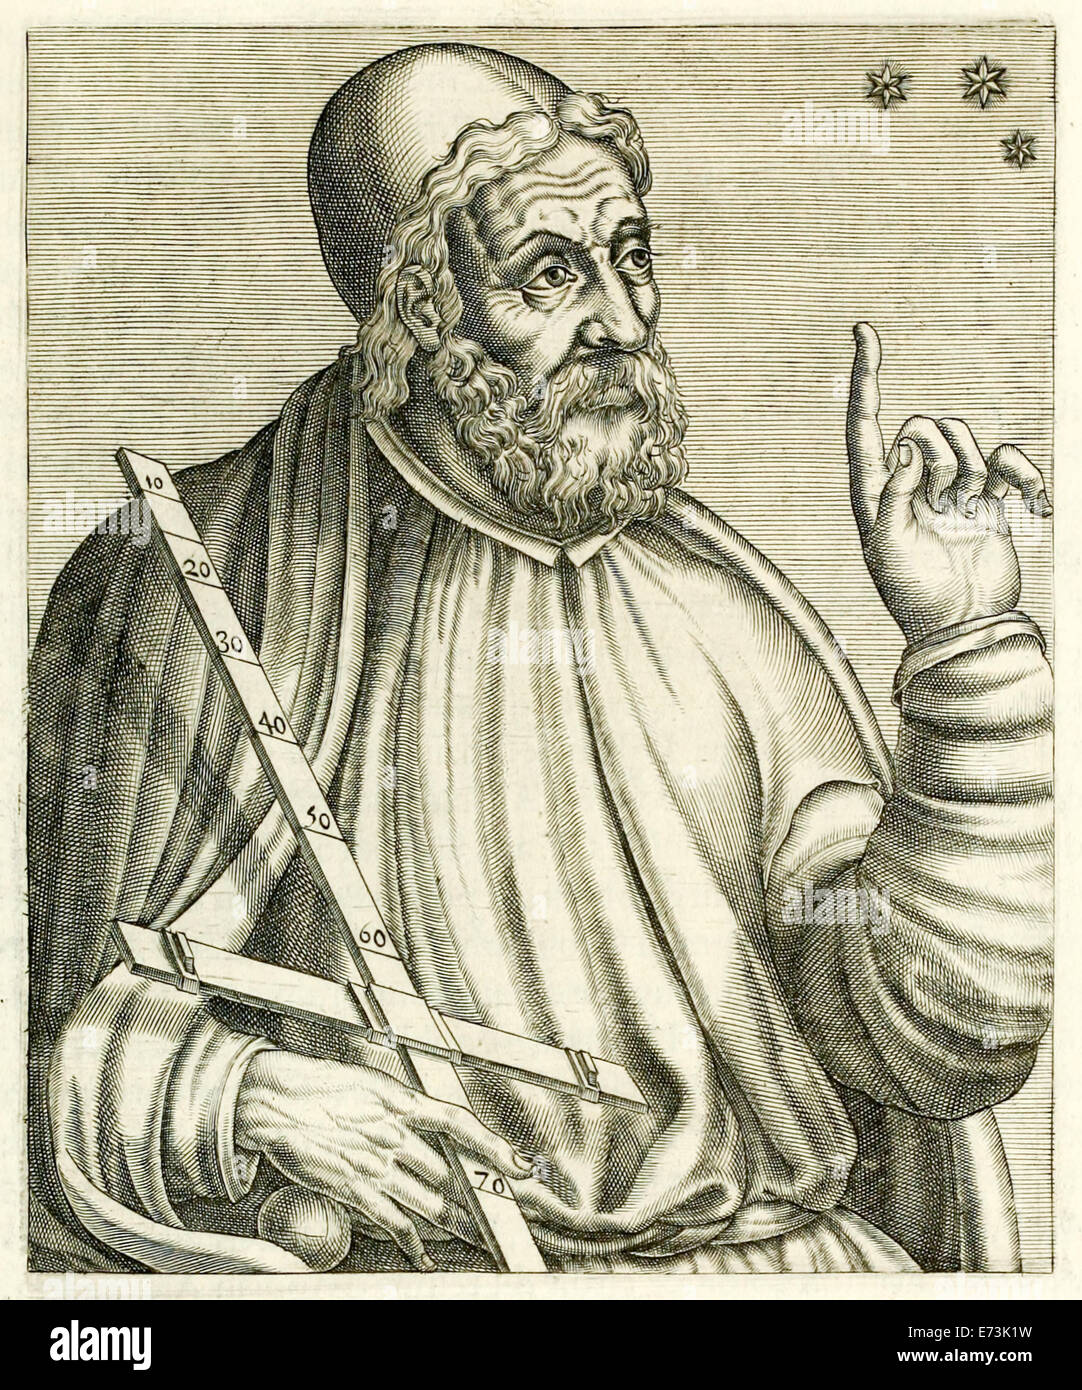 Claudius Ptolemäus (90-168) von "Echten Porträts..." von André Thévet veröffentlicht im Jahre 1594. Siehe Beschreibung für mehr Informationen. Stockfoto